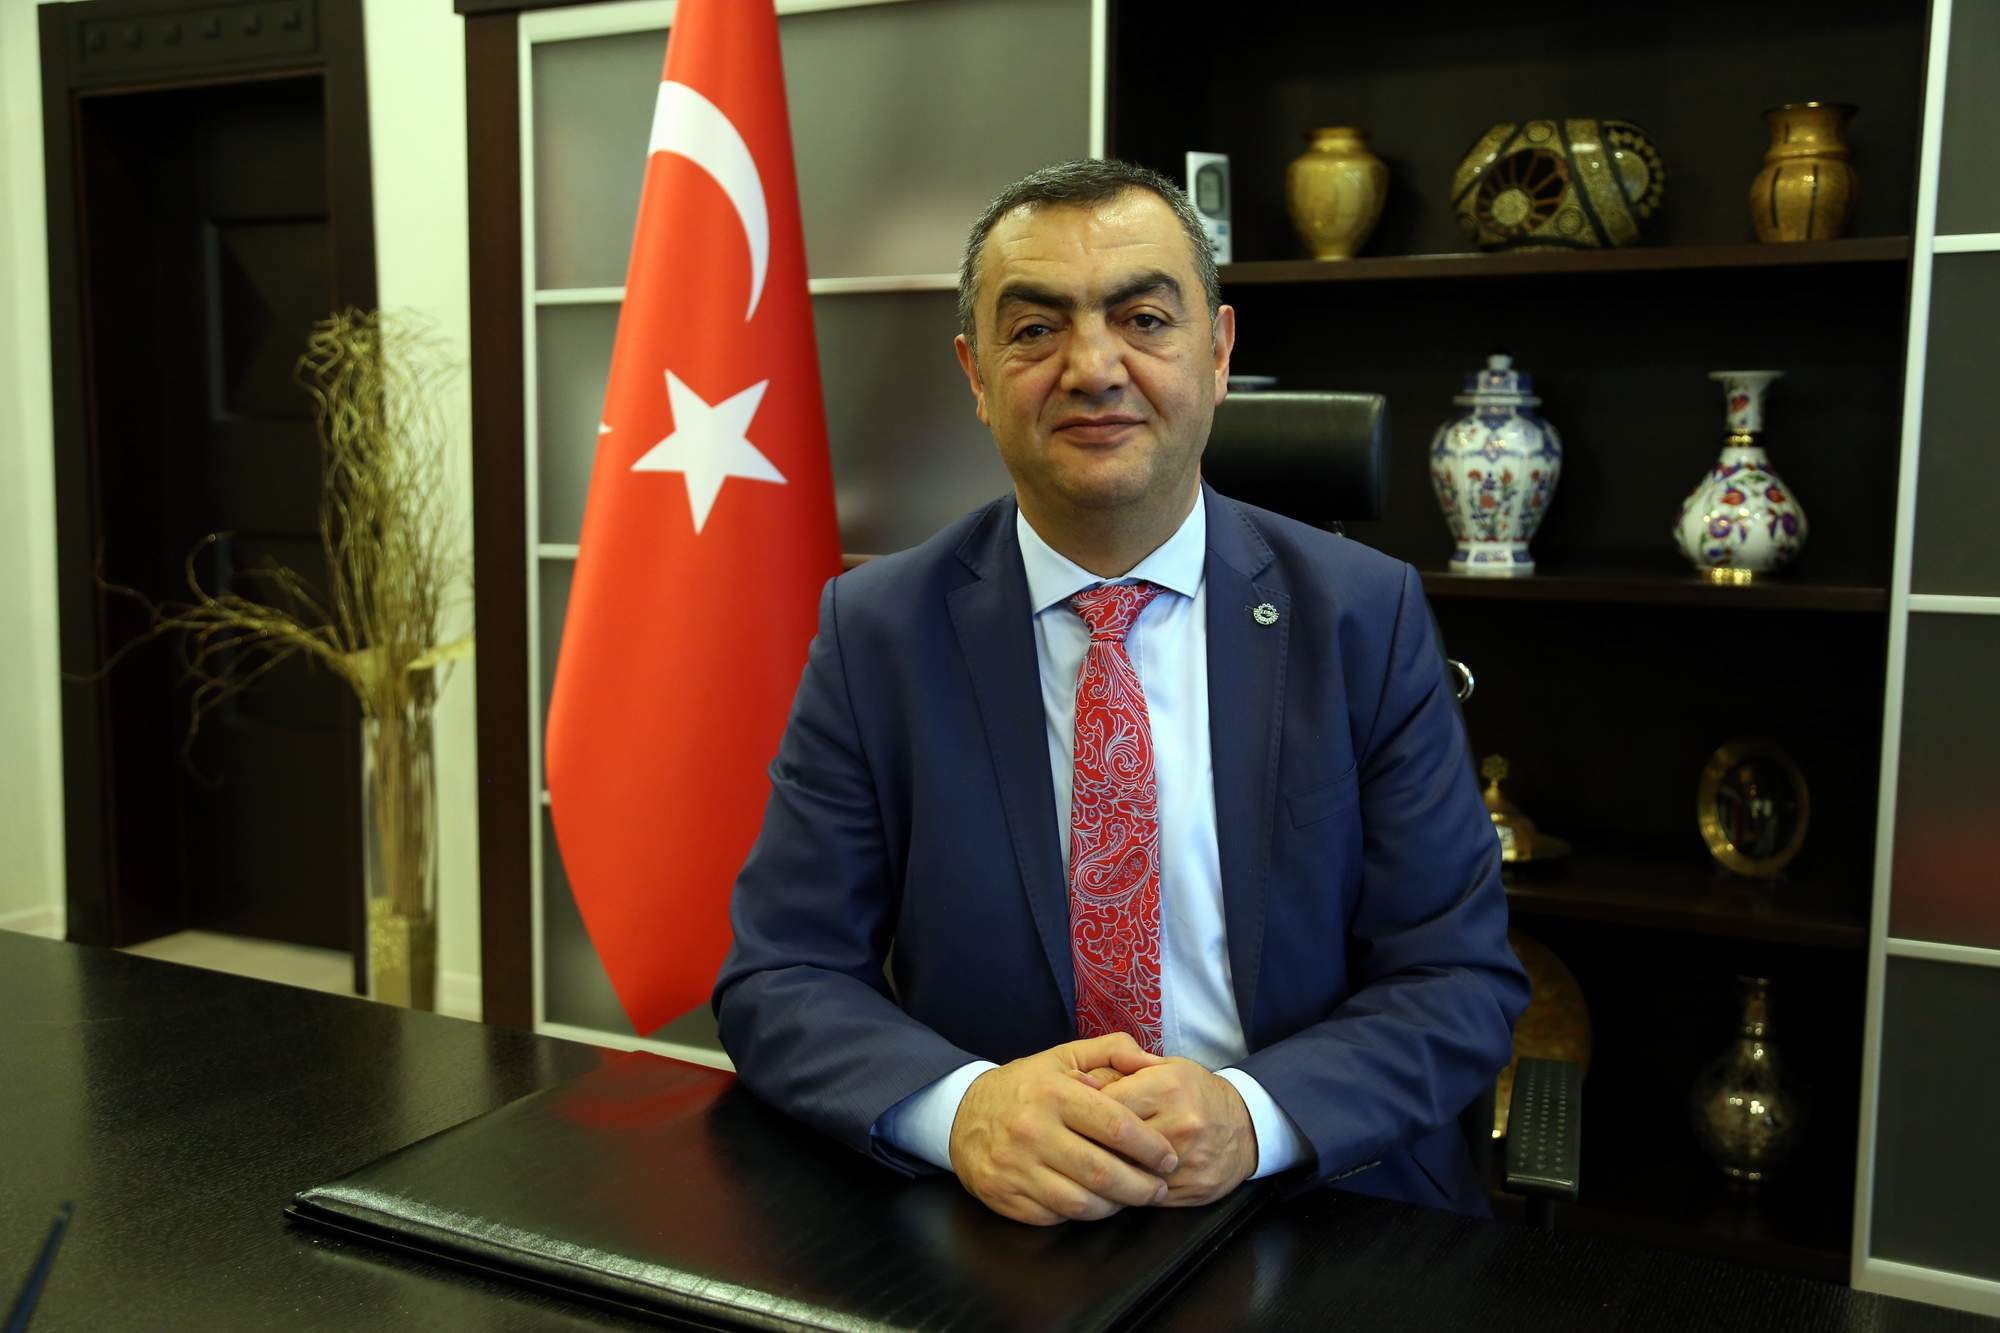 KAYSO Başkanı Büyüksimitci: “Türkiye Cumhuriyeti’ni bölmeye yönelik alçakça girişimler, hiçbir zaman amacına ulaşamayacaktır”